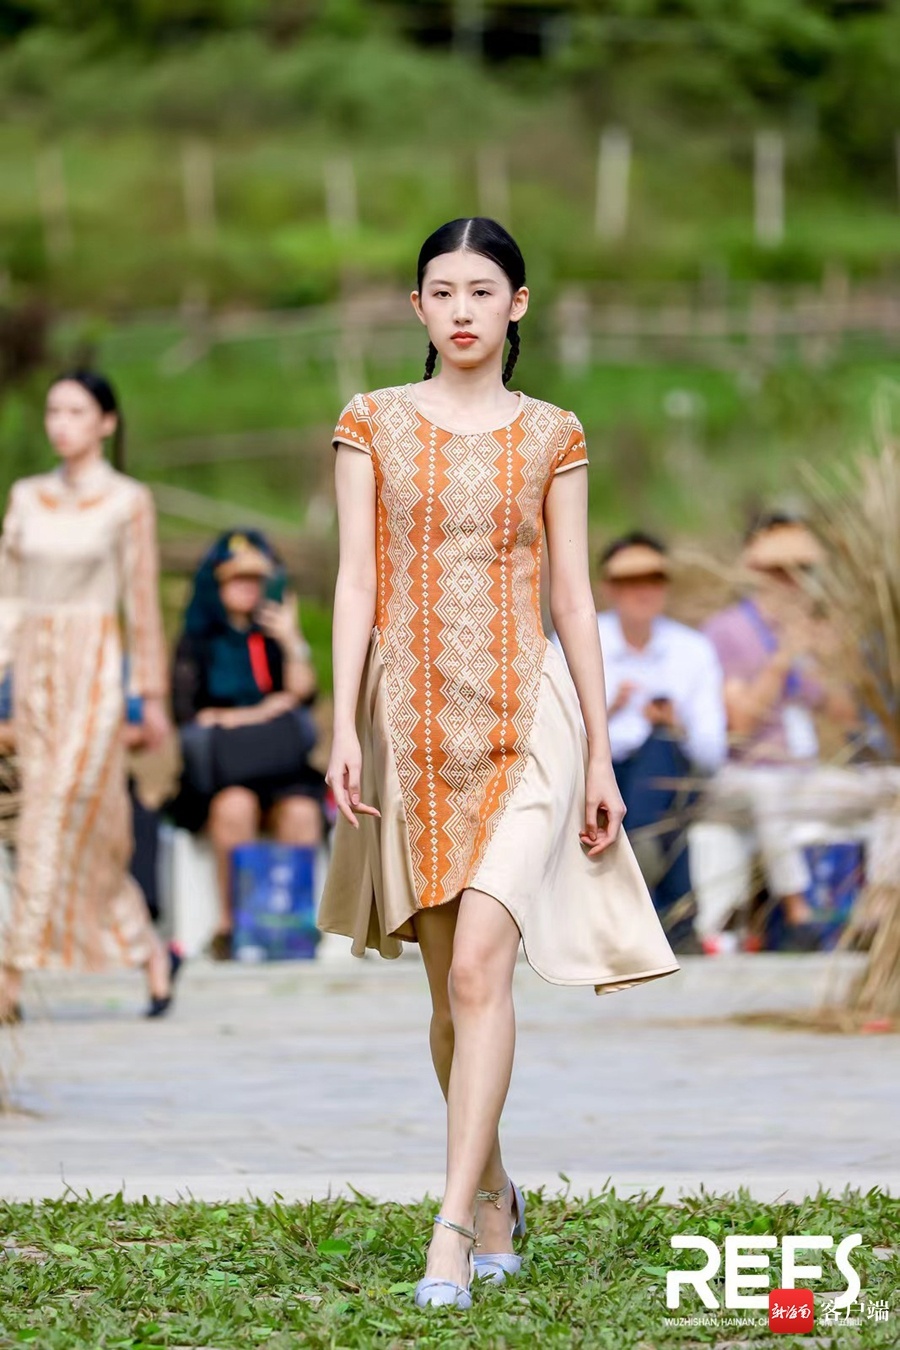 时尚元素与传统黎锦的绝妙碰撞 “锦·无界2022雨林精灵时装秀”26日在五指山开展